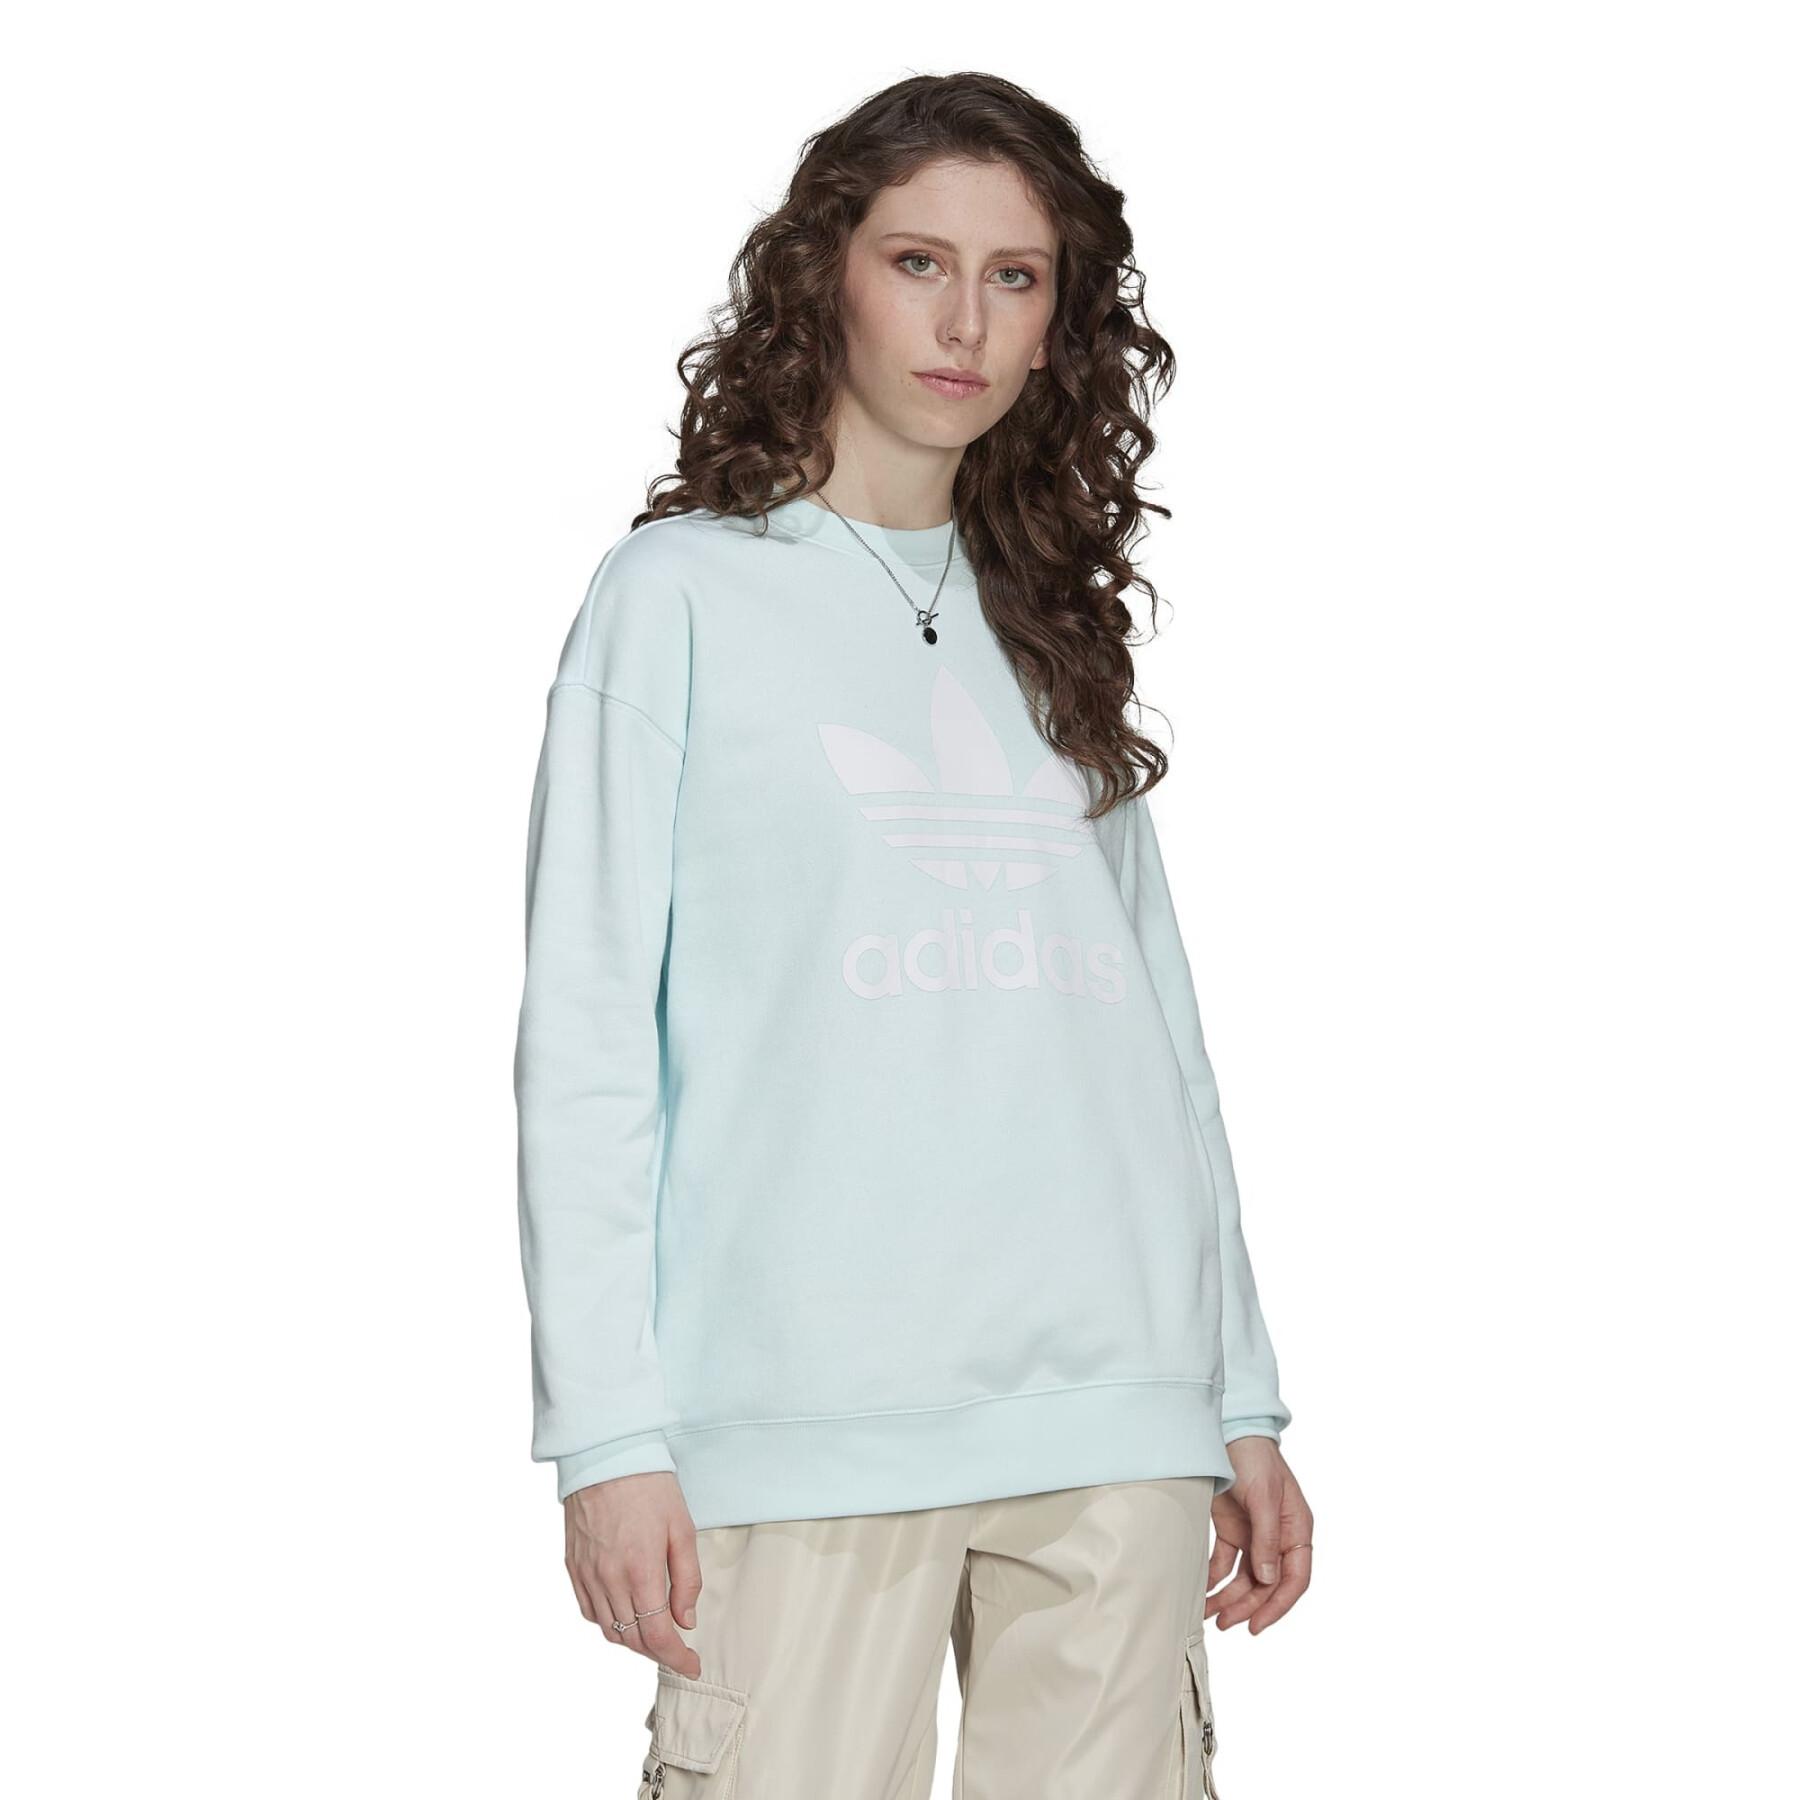 Rundhals-Sweatshirt Frau adidas Originals Trefoil